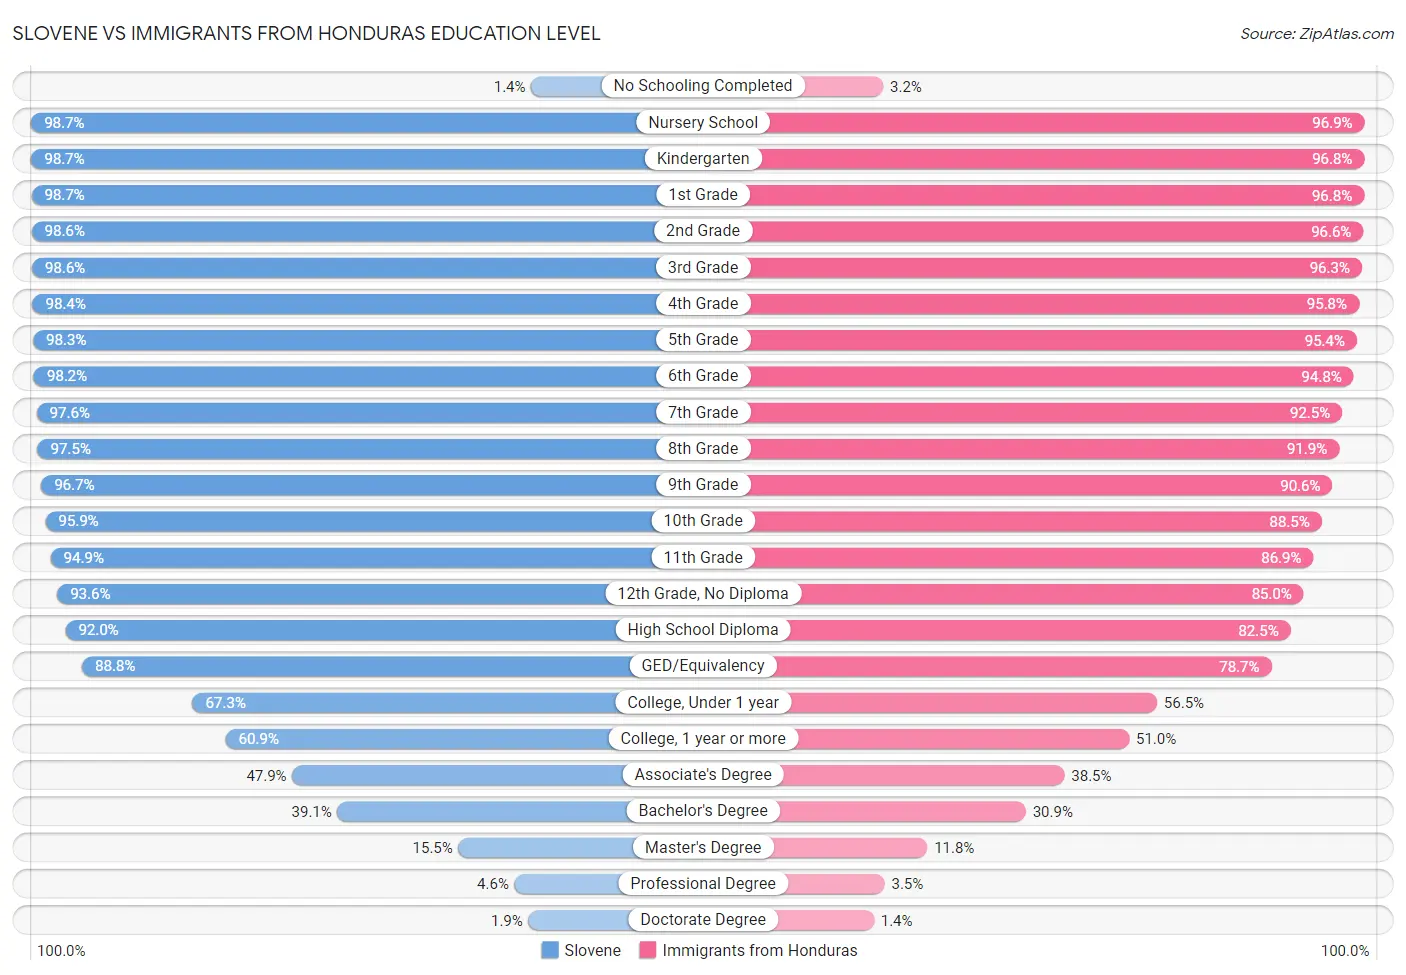 Slovene vs Immigrants from Honduras Education Level